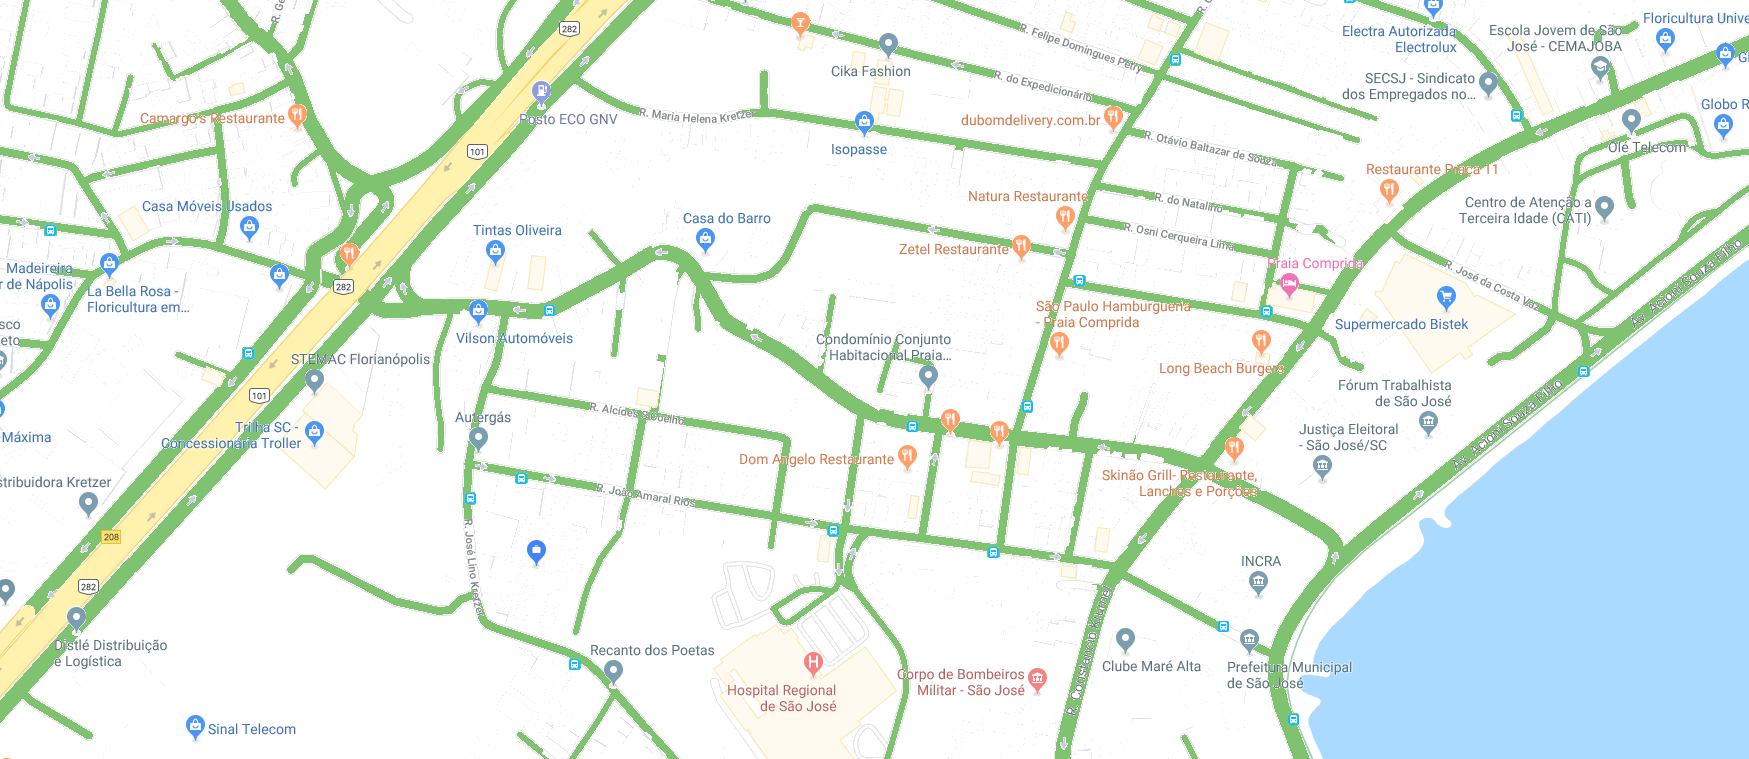 Mapa2PraiaCompridaSJ-IFSC.png